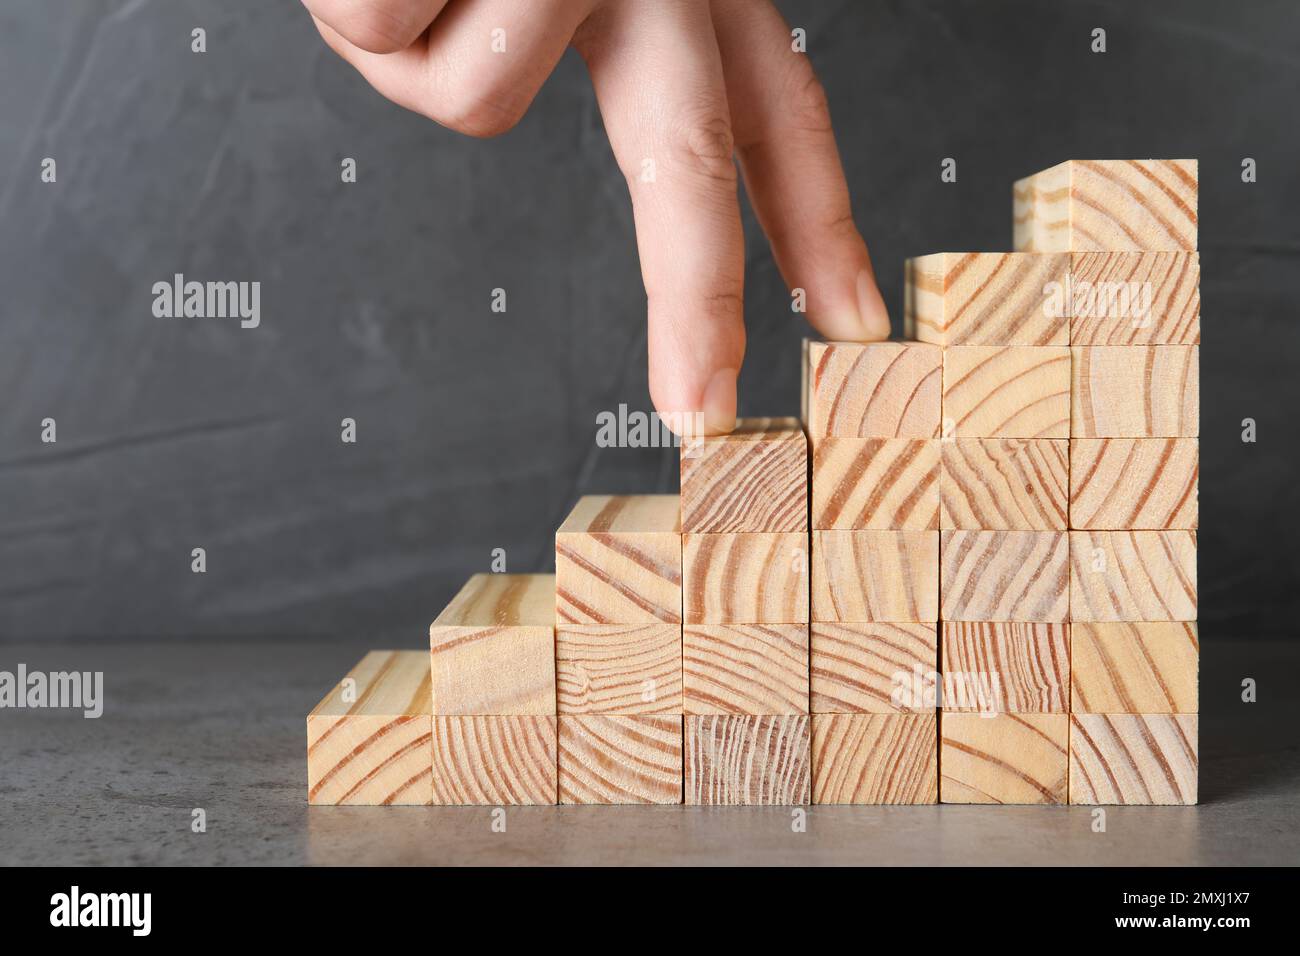 Homme imitant monter sur des escaliers en bois avec ses doigts, gros plan. Échelle de carrière Banque D'Images